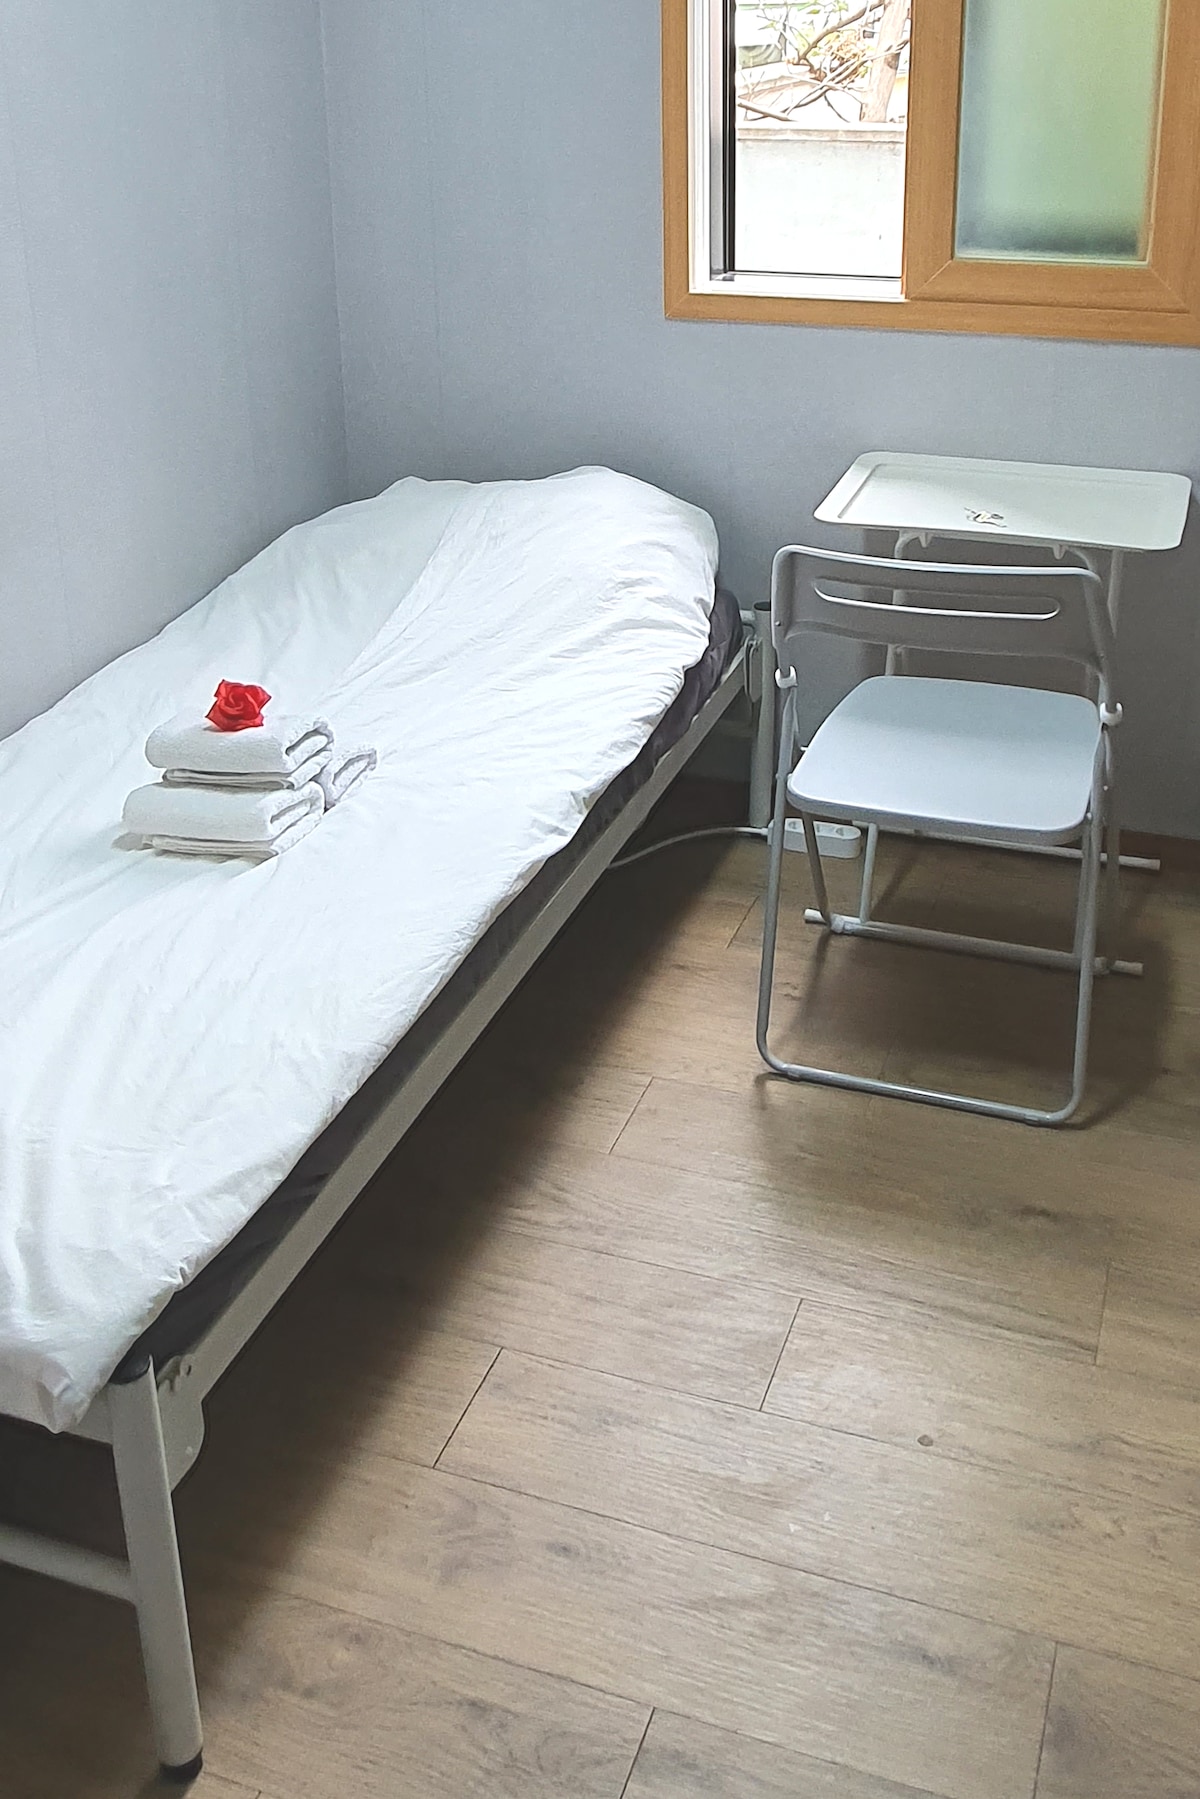 #性价比高的花园房间2/Bangbae-dong整洁的房间/瑞草区整洁的房间/江南干净的房间/安全房间